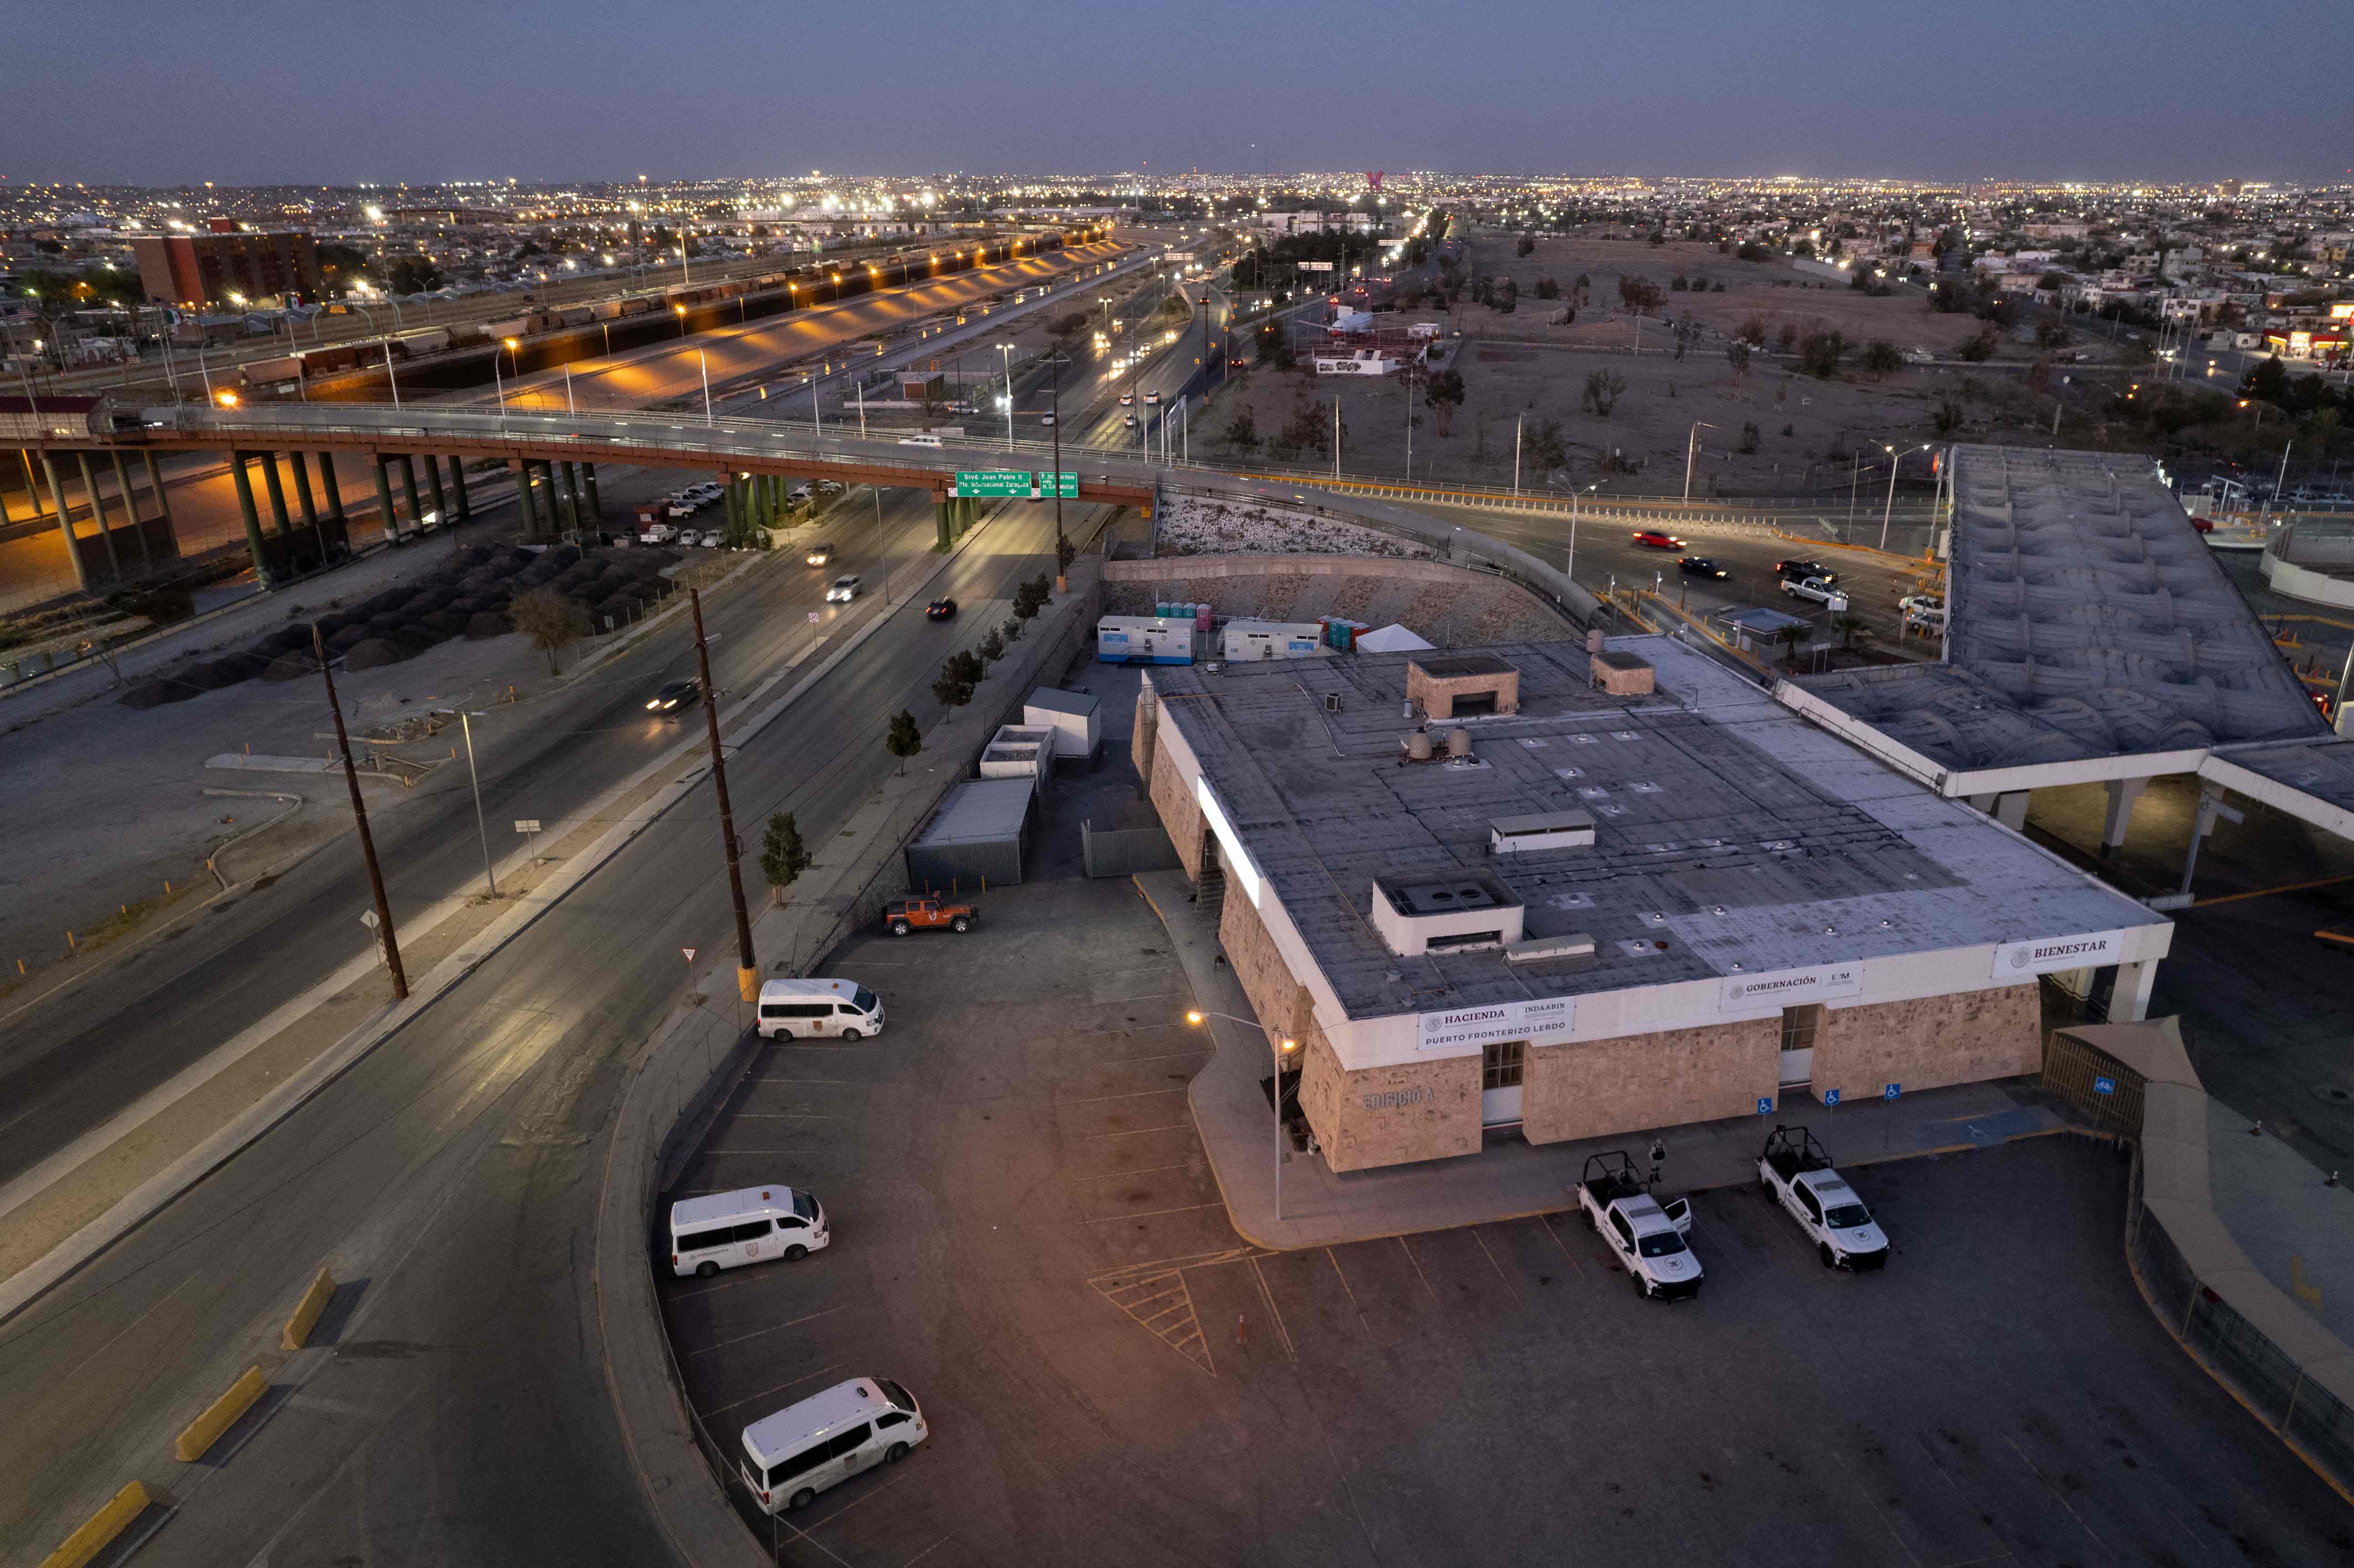 La tragedia que cobró la vida de por lo menos 40 migrantes ocurrió en un centro de detención a cargo del Instituto Nacional de Migración, en Ciudad Juárez, México. (Foto Prensa Libre: AFP)